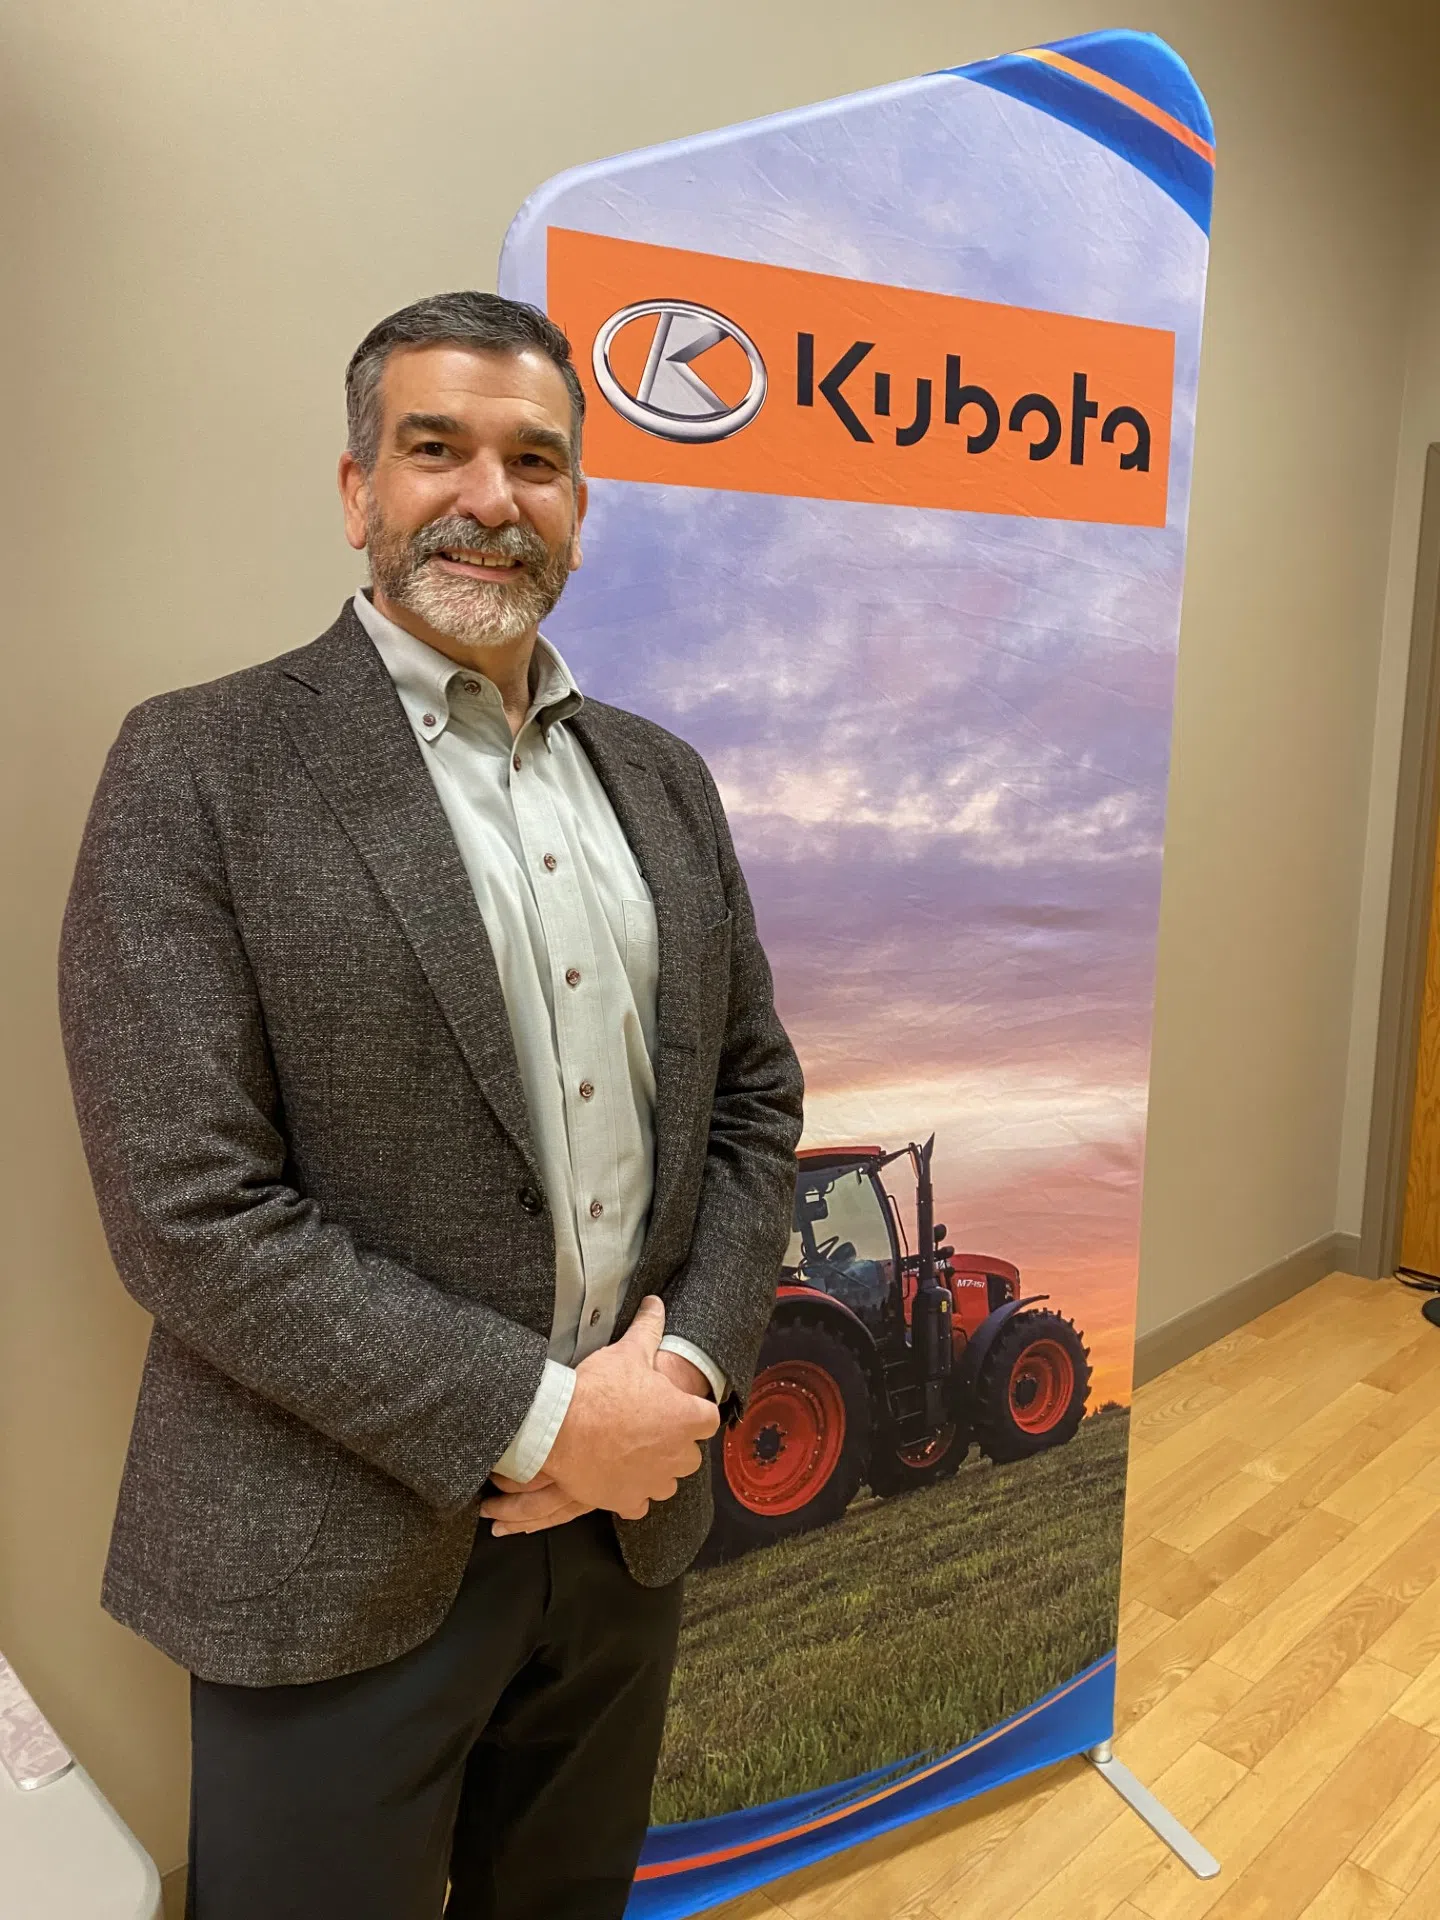 Kubota Canada Community Hero Award To Roberts Farm Equipment. Interview with Andrew Marshall of Kubota Canada